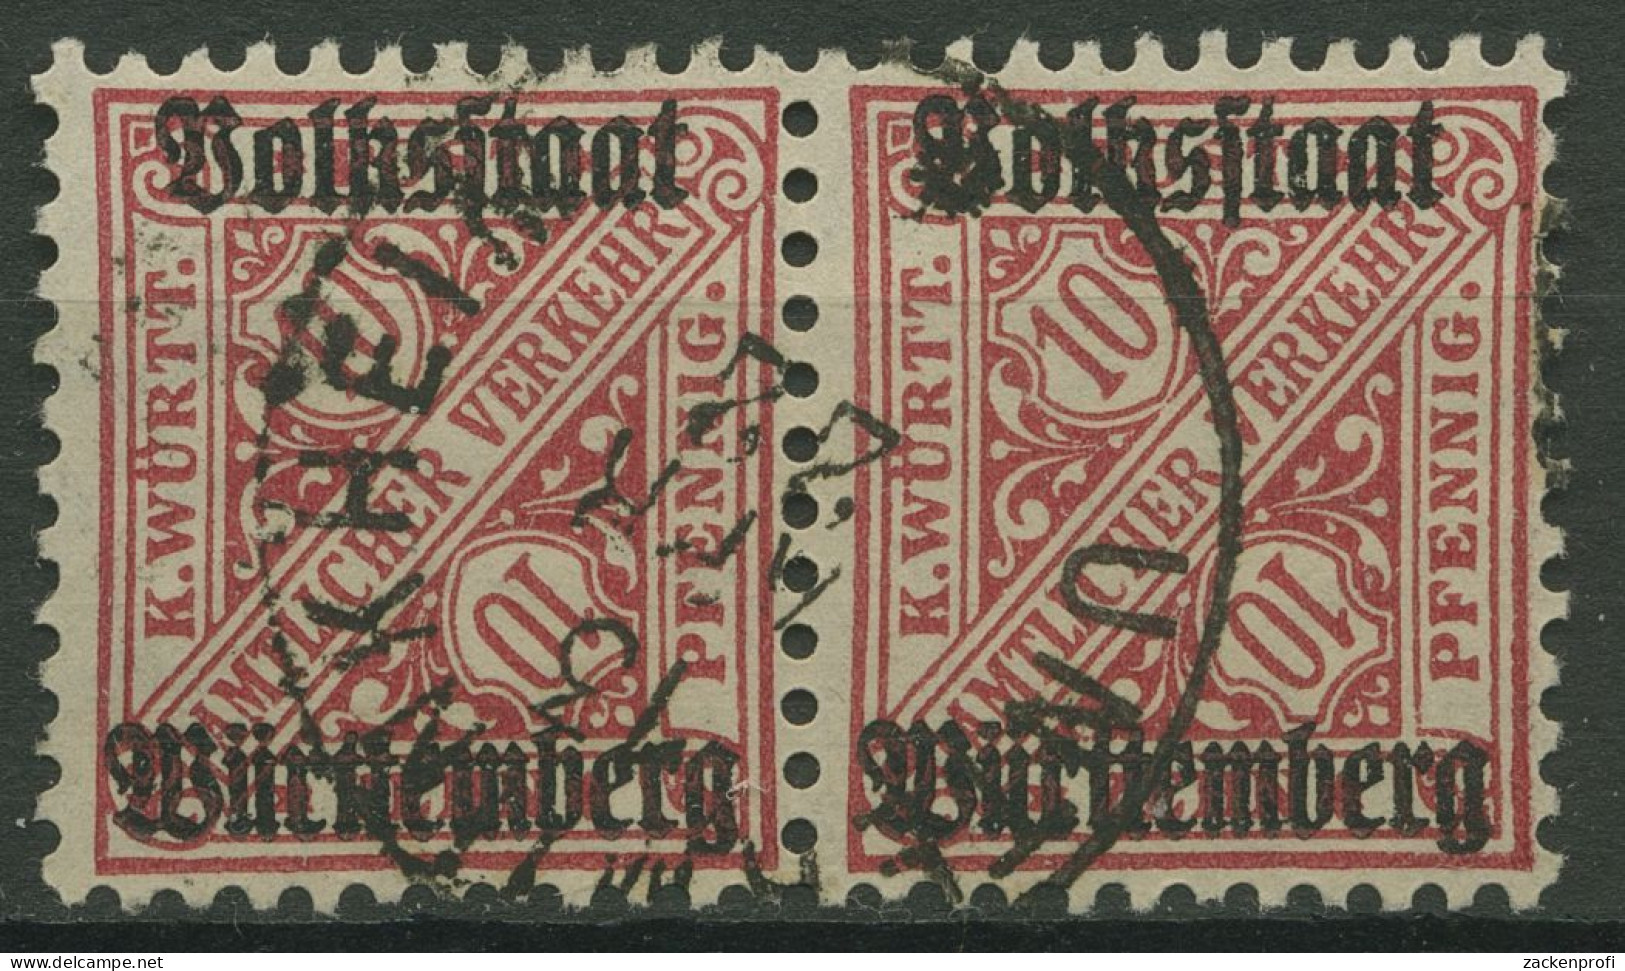 Württemberg Dienstmarken 1919 Mit Aufdruck 262 Waagerechtes Paar Gestempelt - Usati